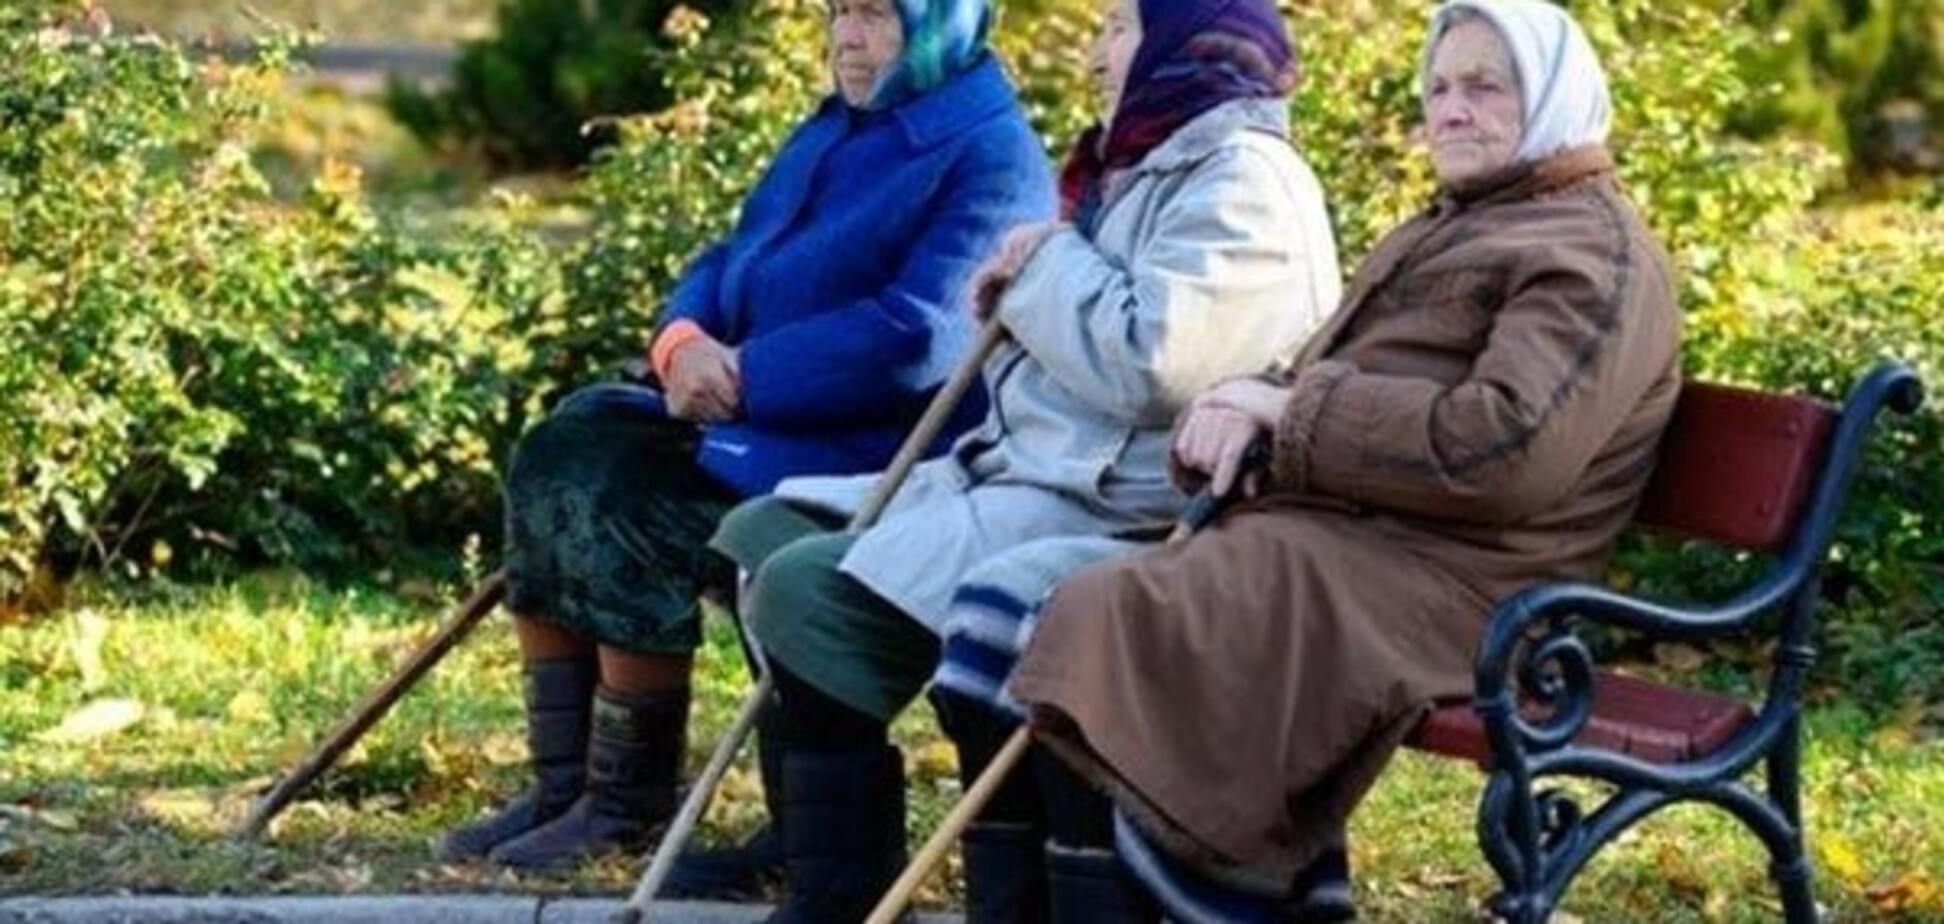 Власти повысят пенсионный возраст до 70 лет - Ляшко